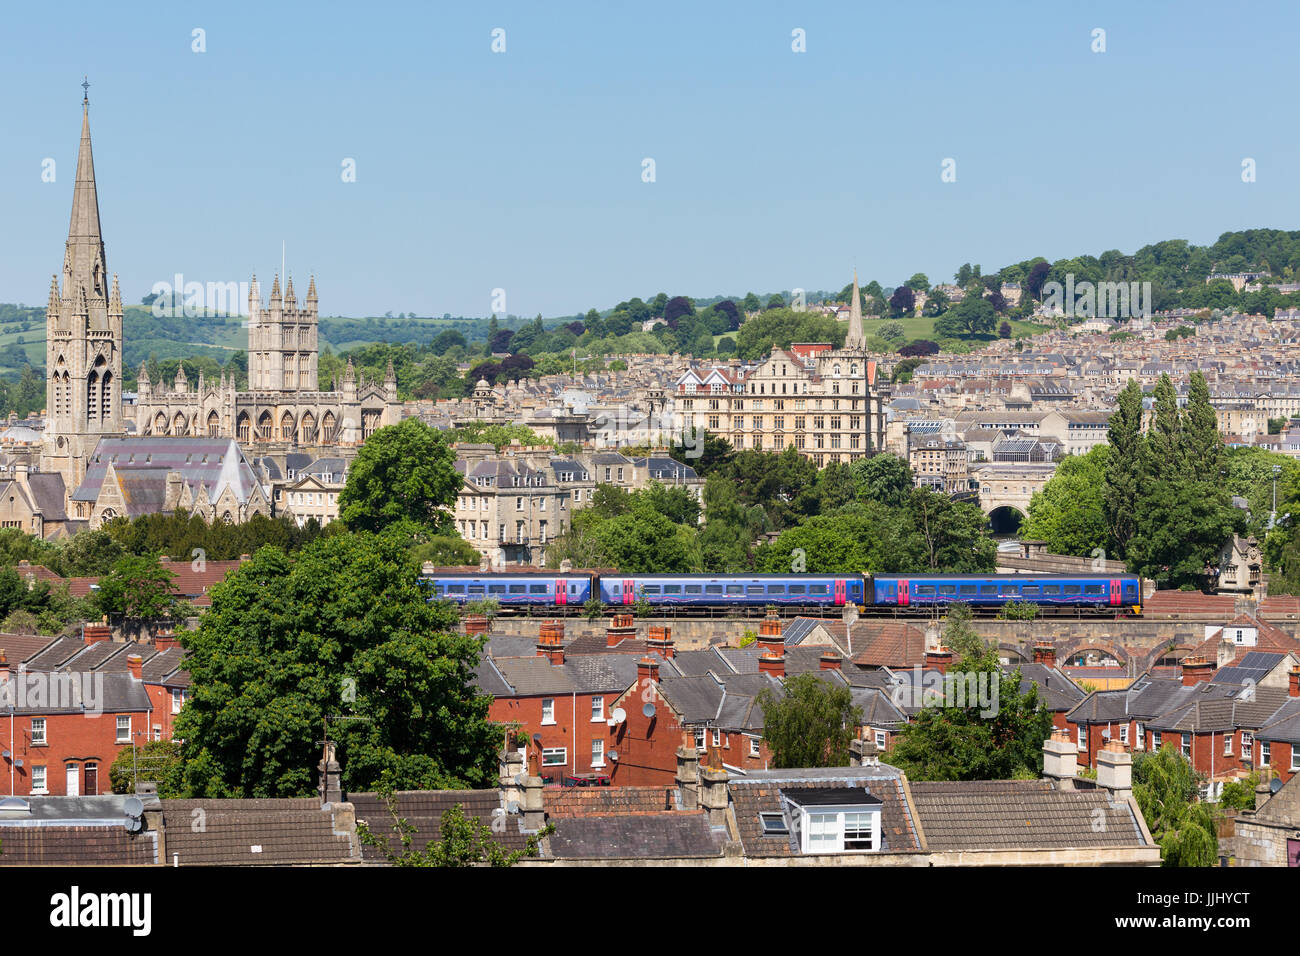 BATH, Royaume-Uni - Mai 26, 2017 : Long shot de la ville de Bath avec un grand train de l'ouest en passant par la partie inférieure du cadre. Banque D'Images